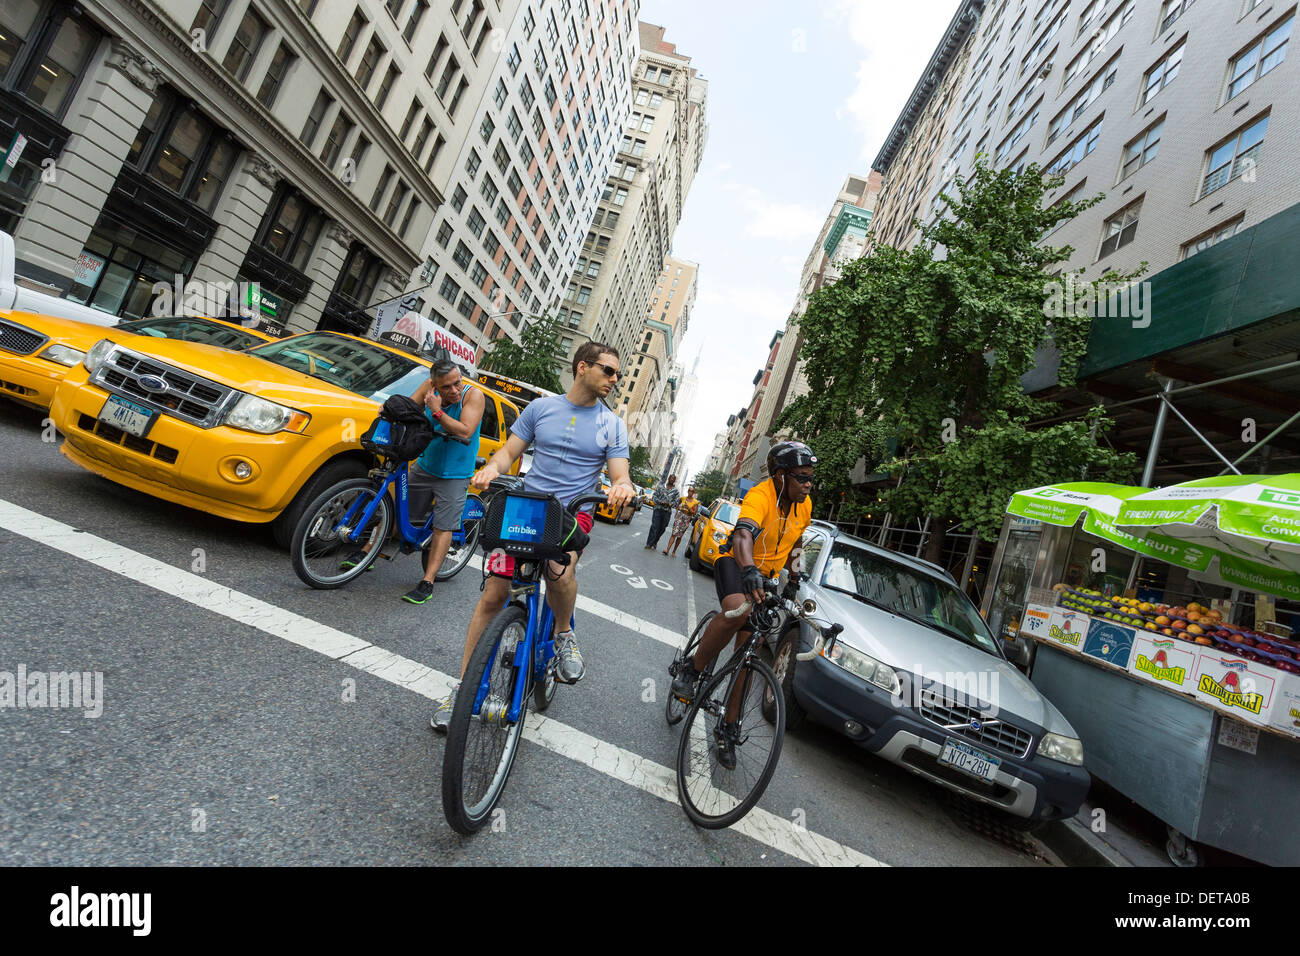 Les jeunes hommes à cheval sur la rue Vélos Citi de New York City Banque D'Images